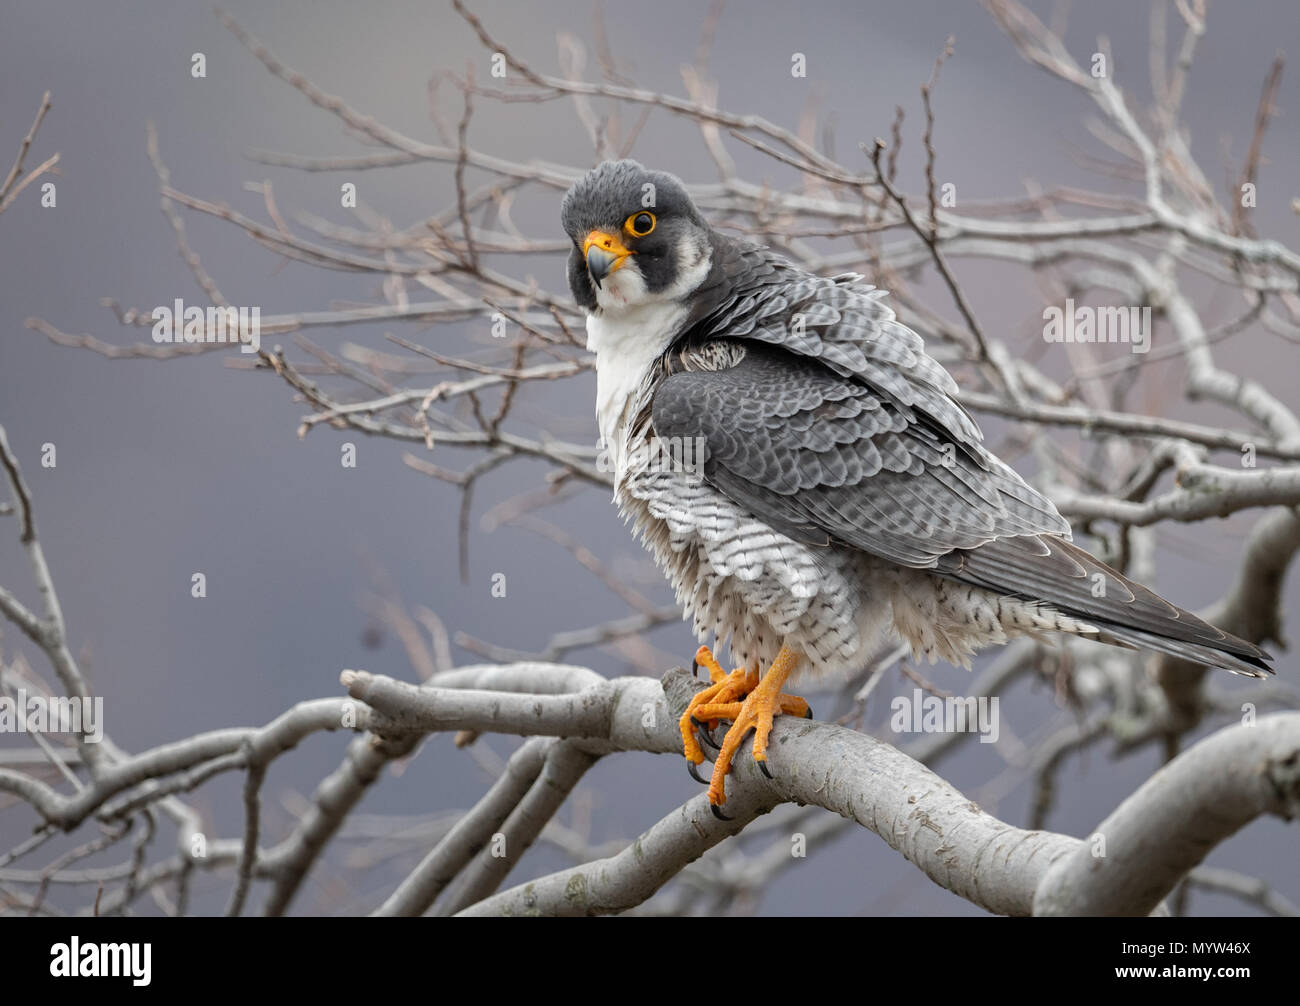 Peregrine falcon portrait Stock Photo